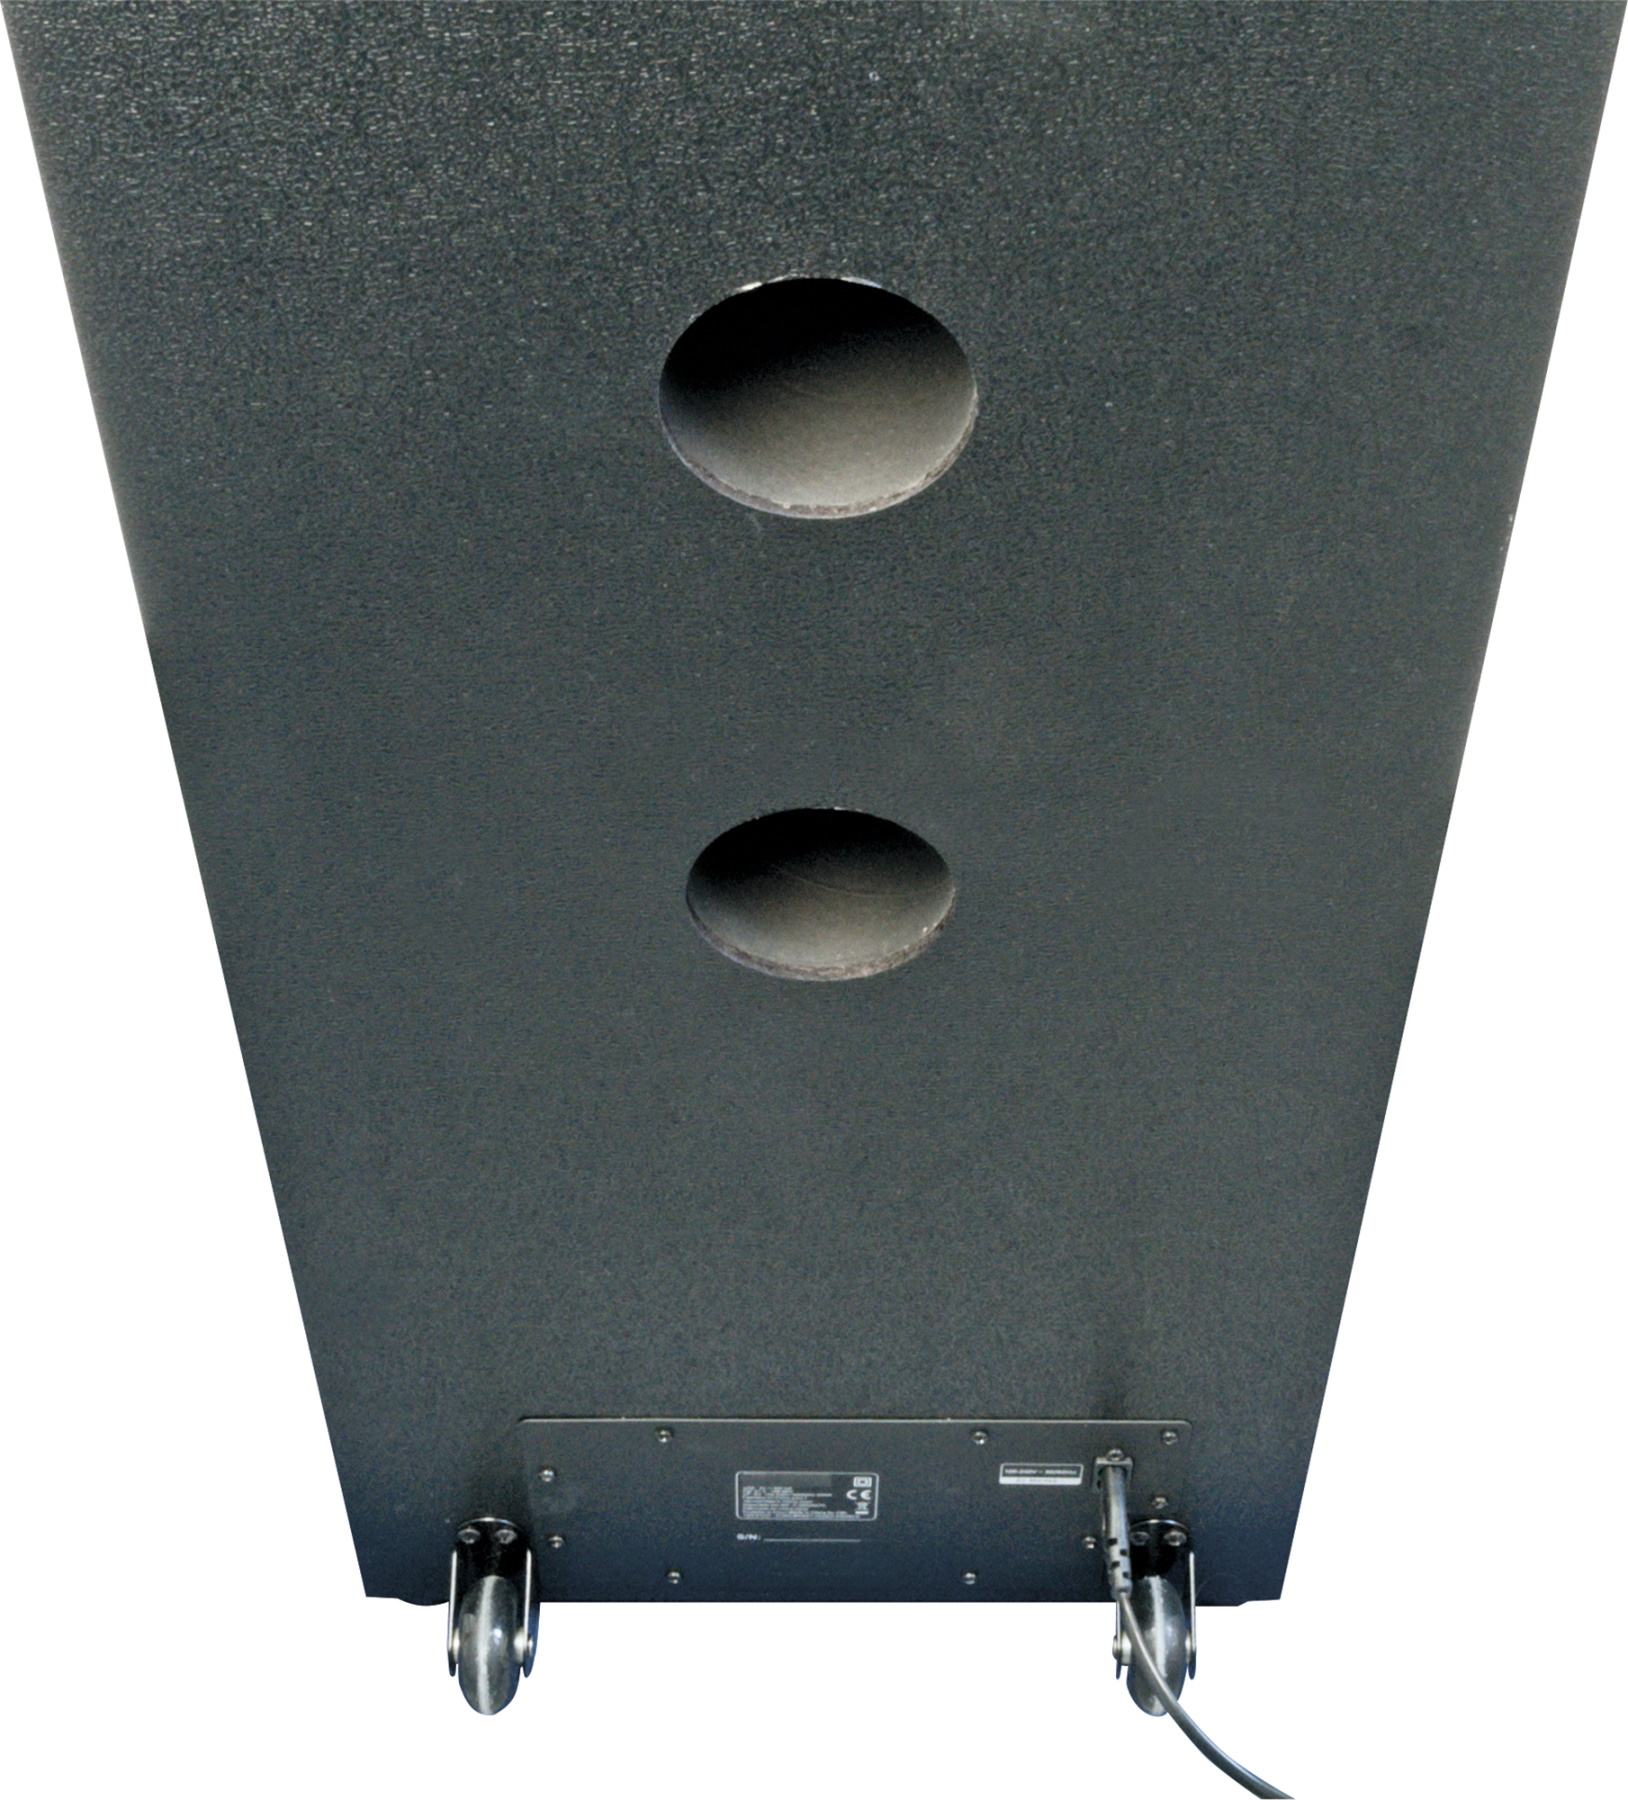 Soundsystem mit Party LED-Lichteffekten, -658057- Schwarz SCHWAIGER Bluetooth